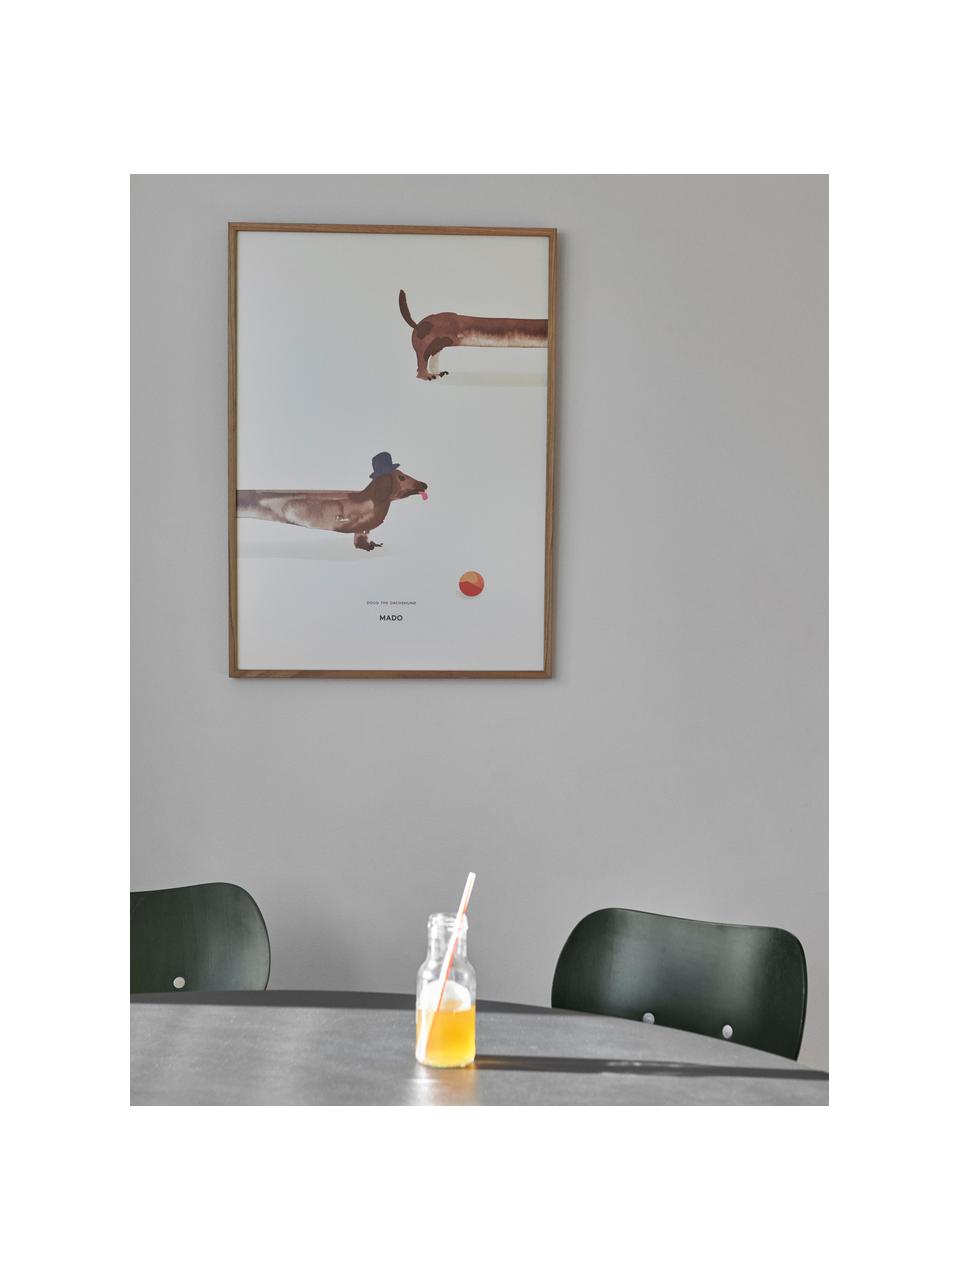 Plakát Doug the Dachshund, 230 g matný zušlechtěný papír, digitální tisk s 12 barvami.

Tento produkt je vyroben z udržitelných zdrojů dřeva s certifikací FSC®., Tlumeně bílá, hnědá, Š 50 cm, V 70 cm